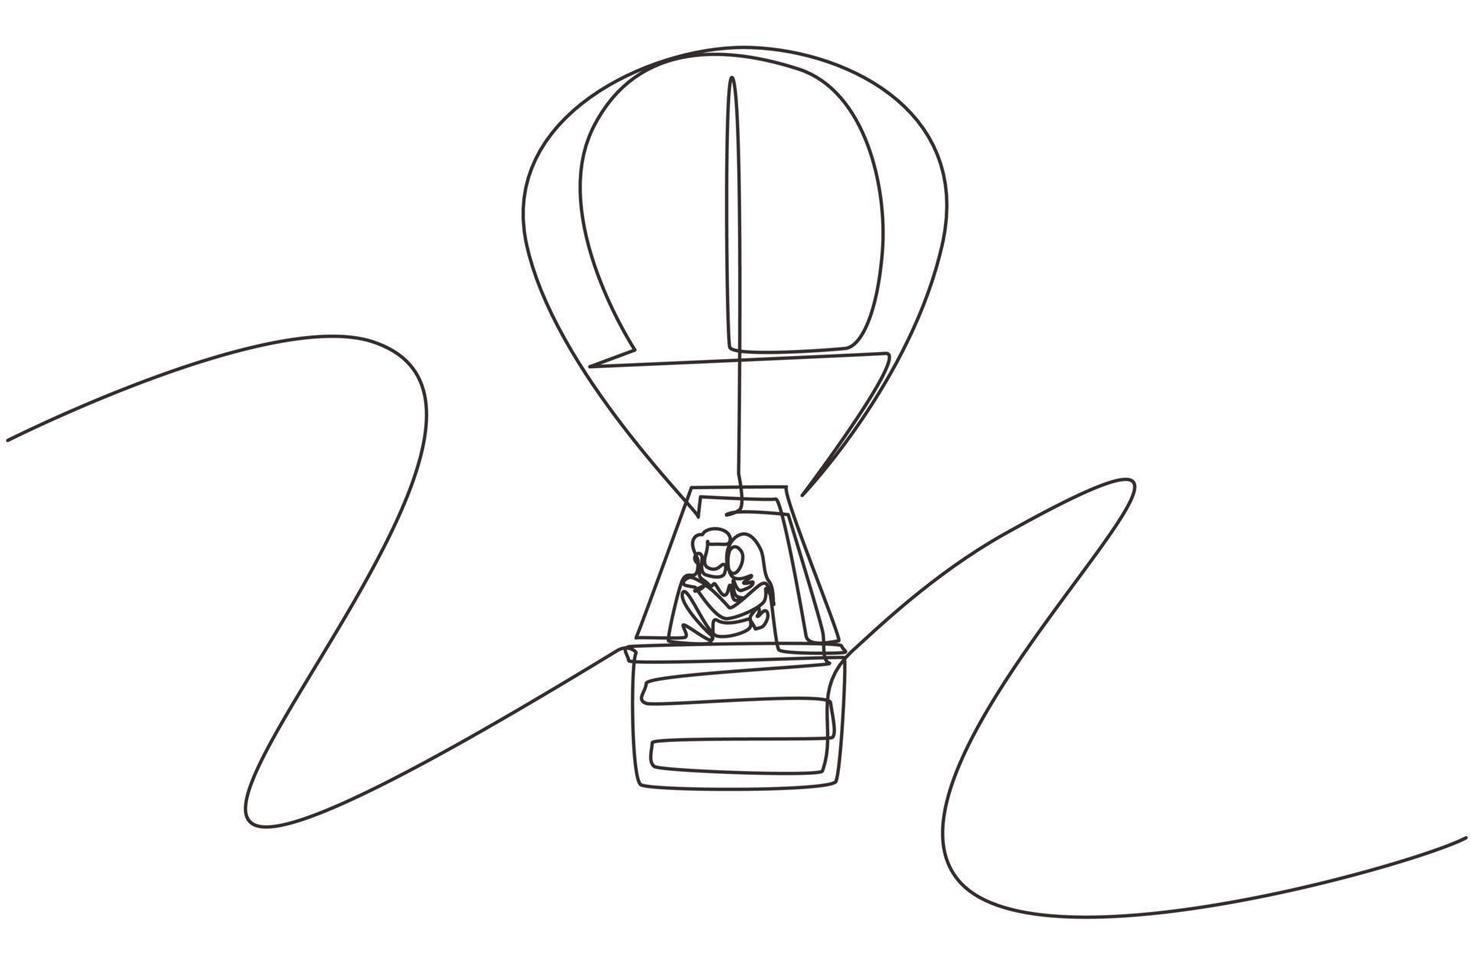 einzelne durchgehende Strichzeichnung Illustration der Liebe, die ein arabisches Paar im Heißluftballon in Himmel und Wolken küsst, verliebte Beziehung. romantischer Roadtrip, Reise. eine linie zeichnen grafikdesignvektor vektor